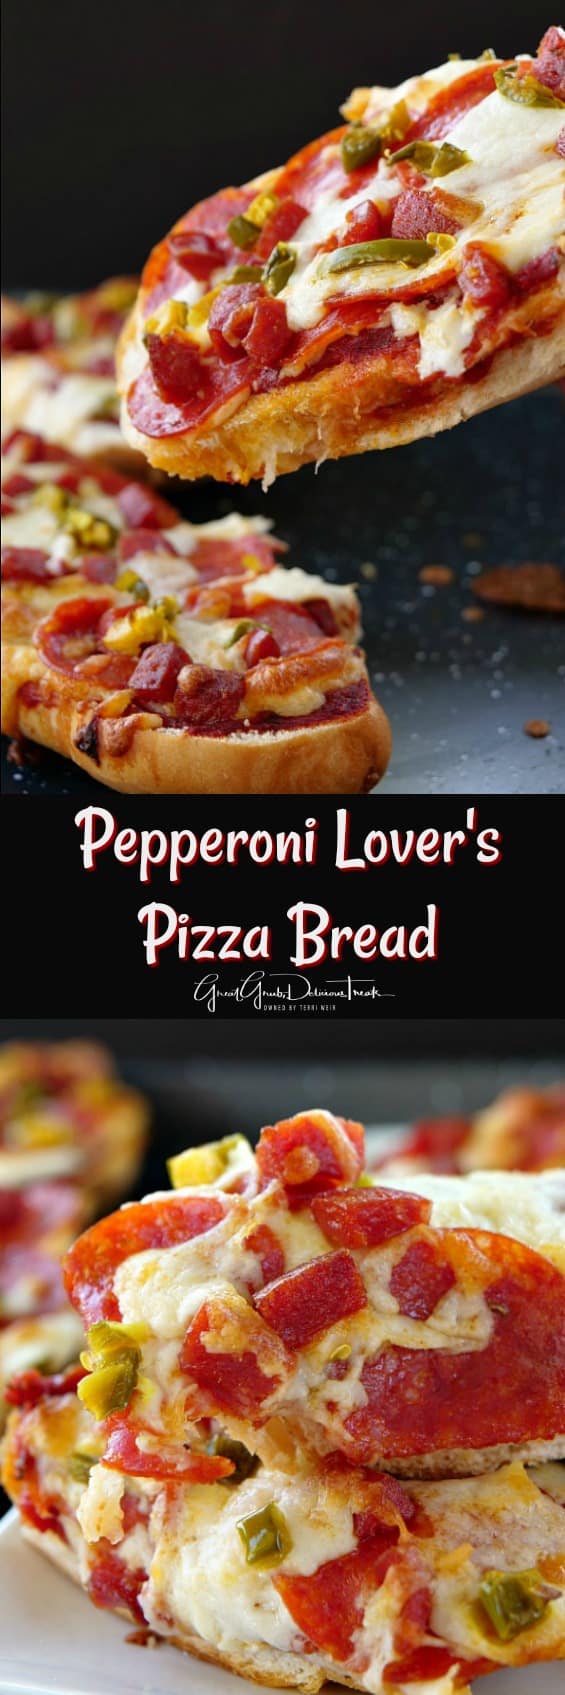 Pepperoni Lover's Pizza Bread